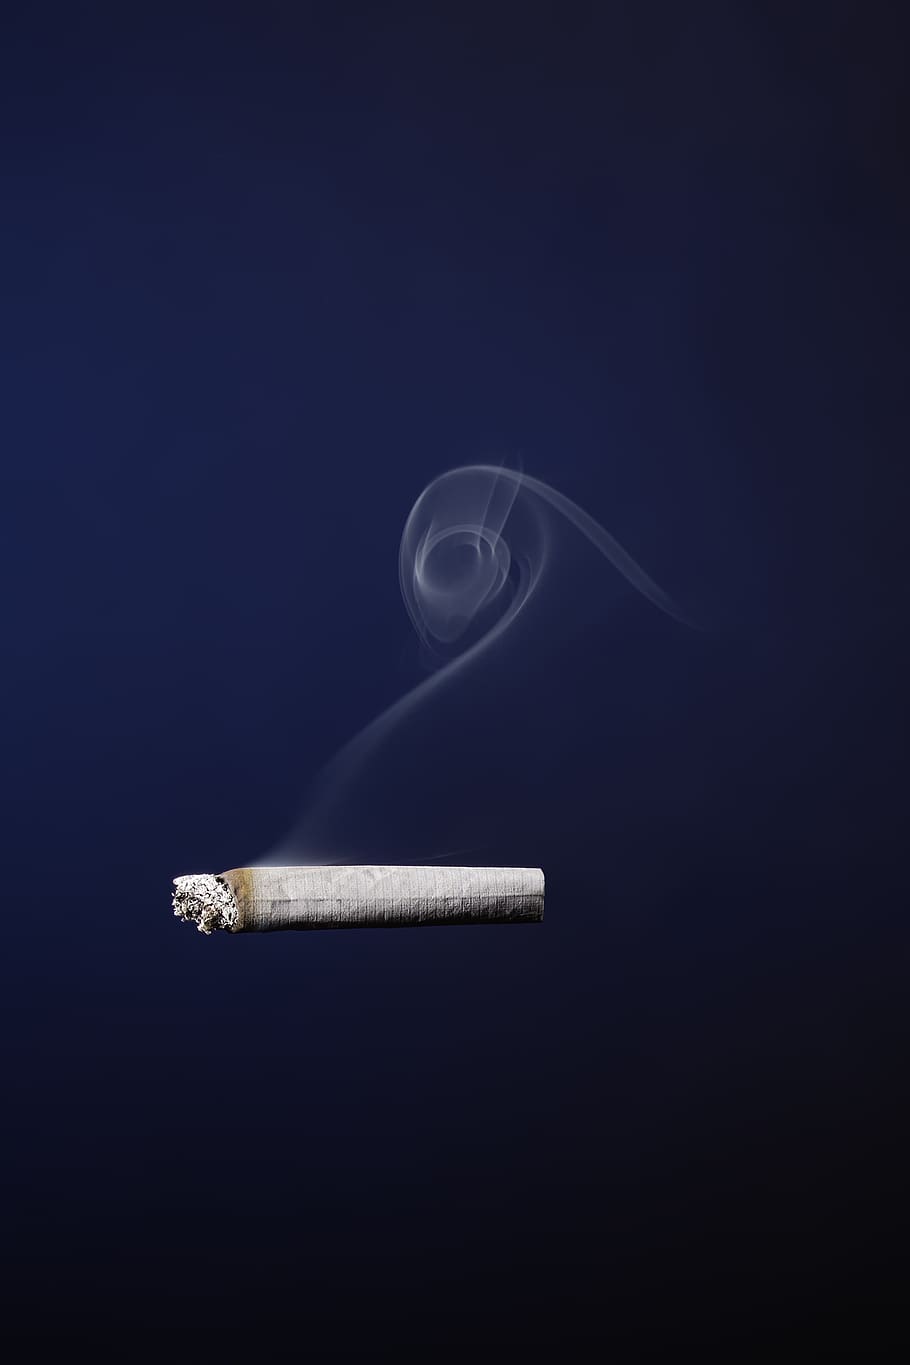 cigarro, fumaça, fumo, cinzas, brasas, tabaco, ponta de cigarro, foto de estúdio, nenhuma pessoa, sinal